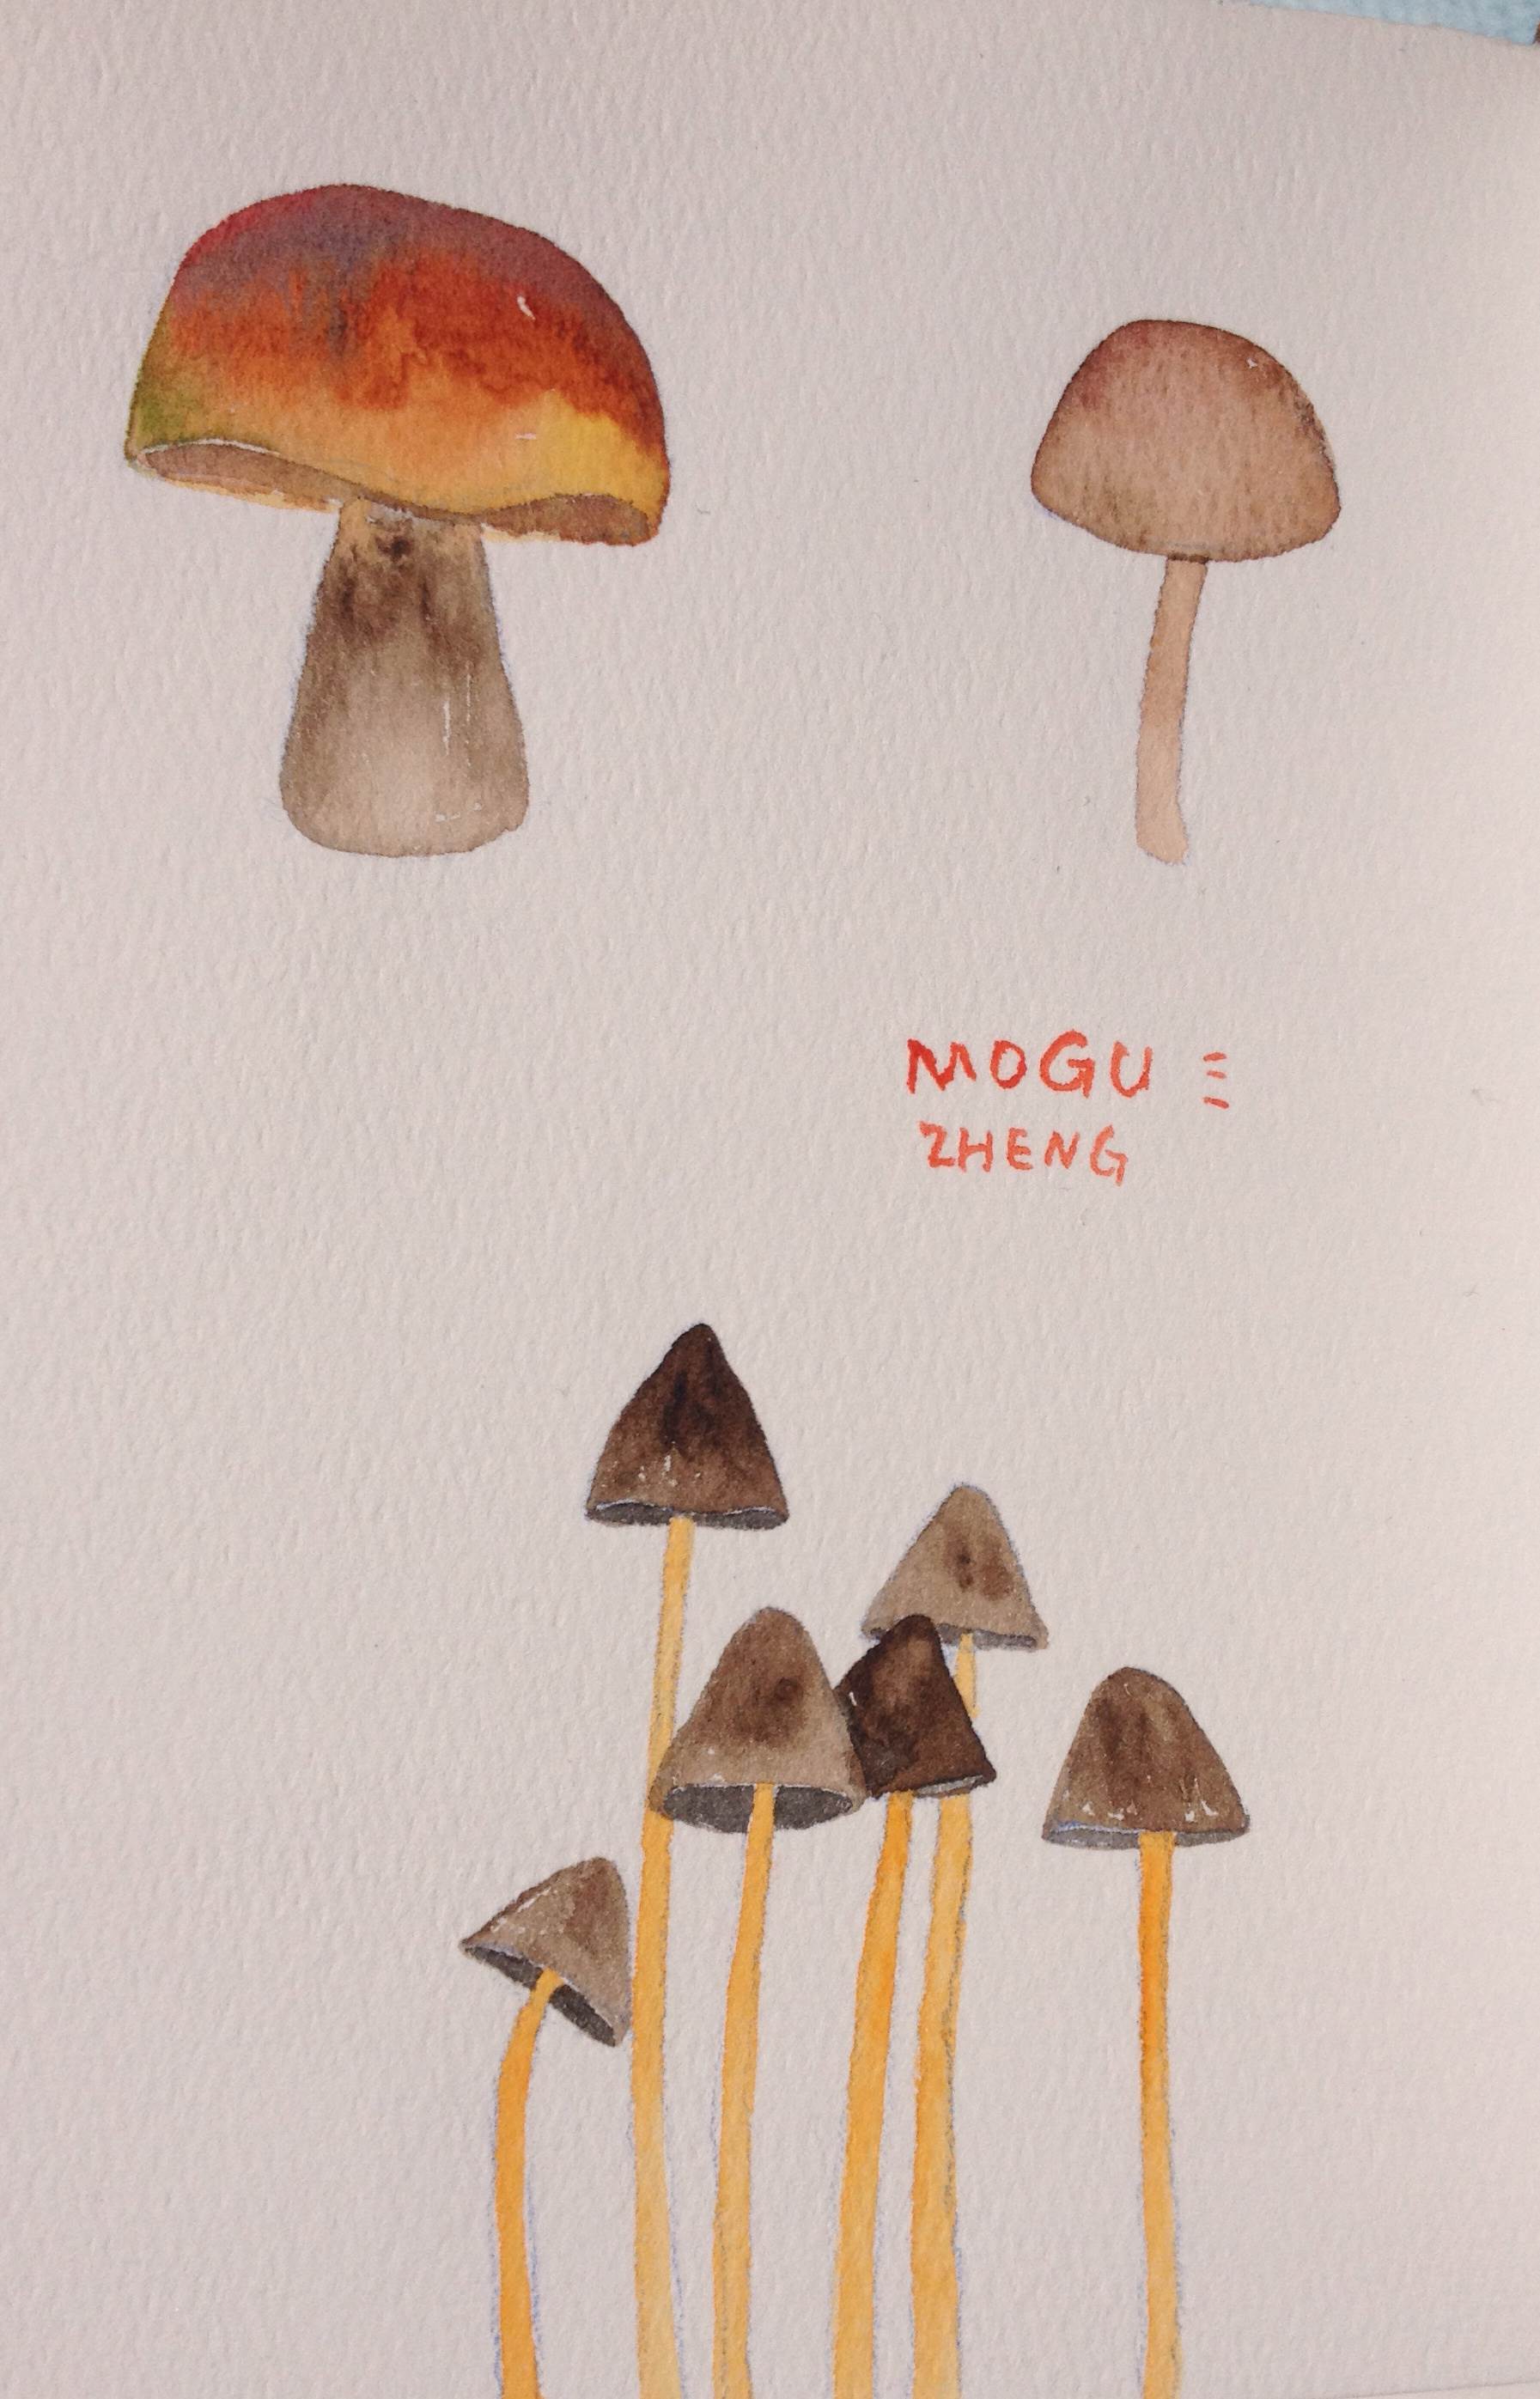 蘑菇水彩画 蘑菇水彩画大全图片